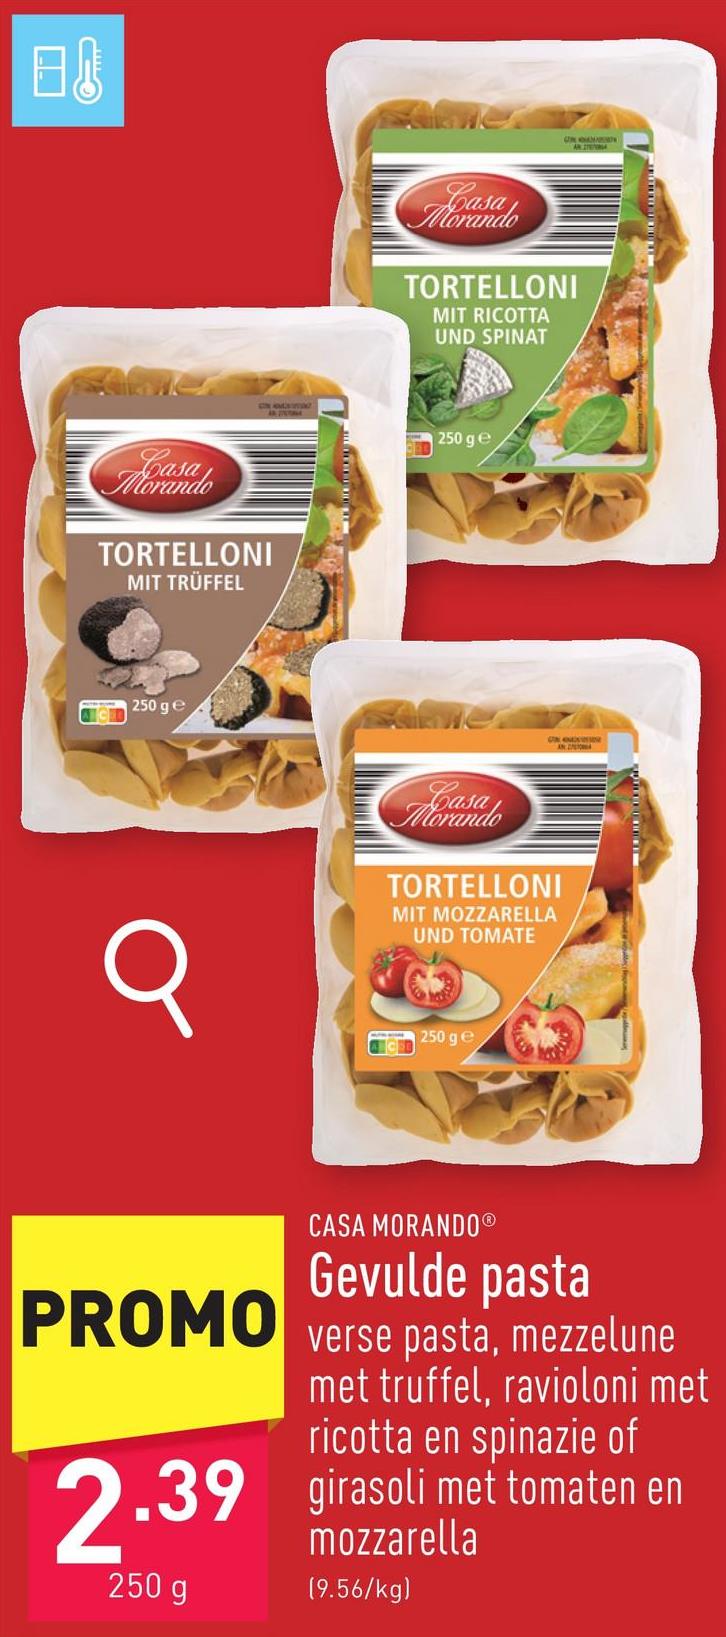 Gevulde pasta verse pasta, keuze uit mezzelune met truffel, ravioloni met ricotta en spinazie en girasoli met tomaten en mozzarella